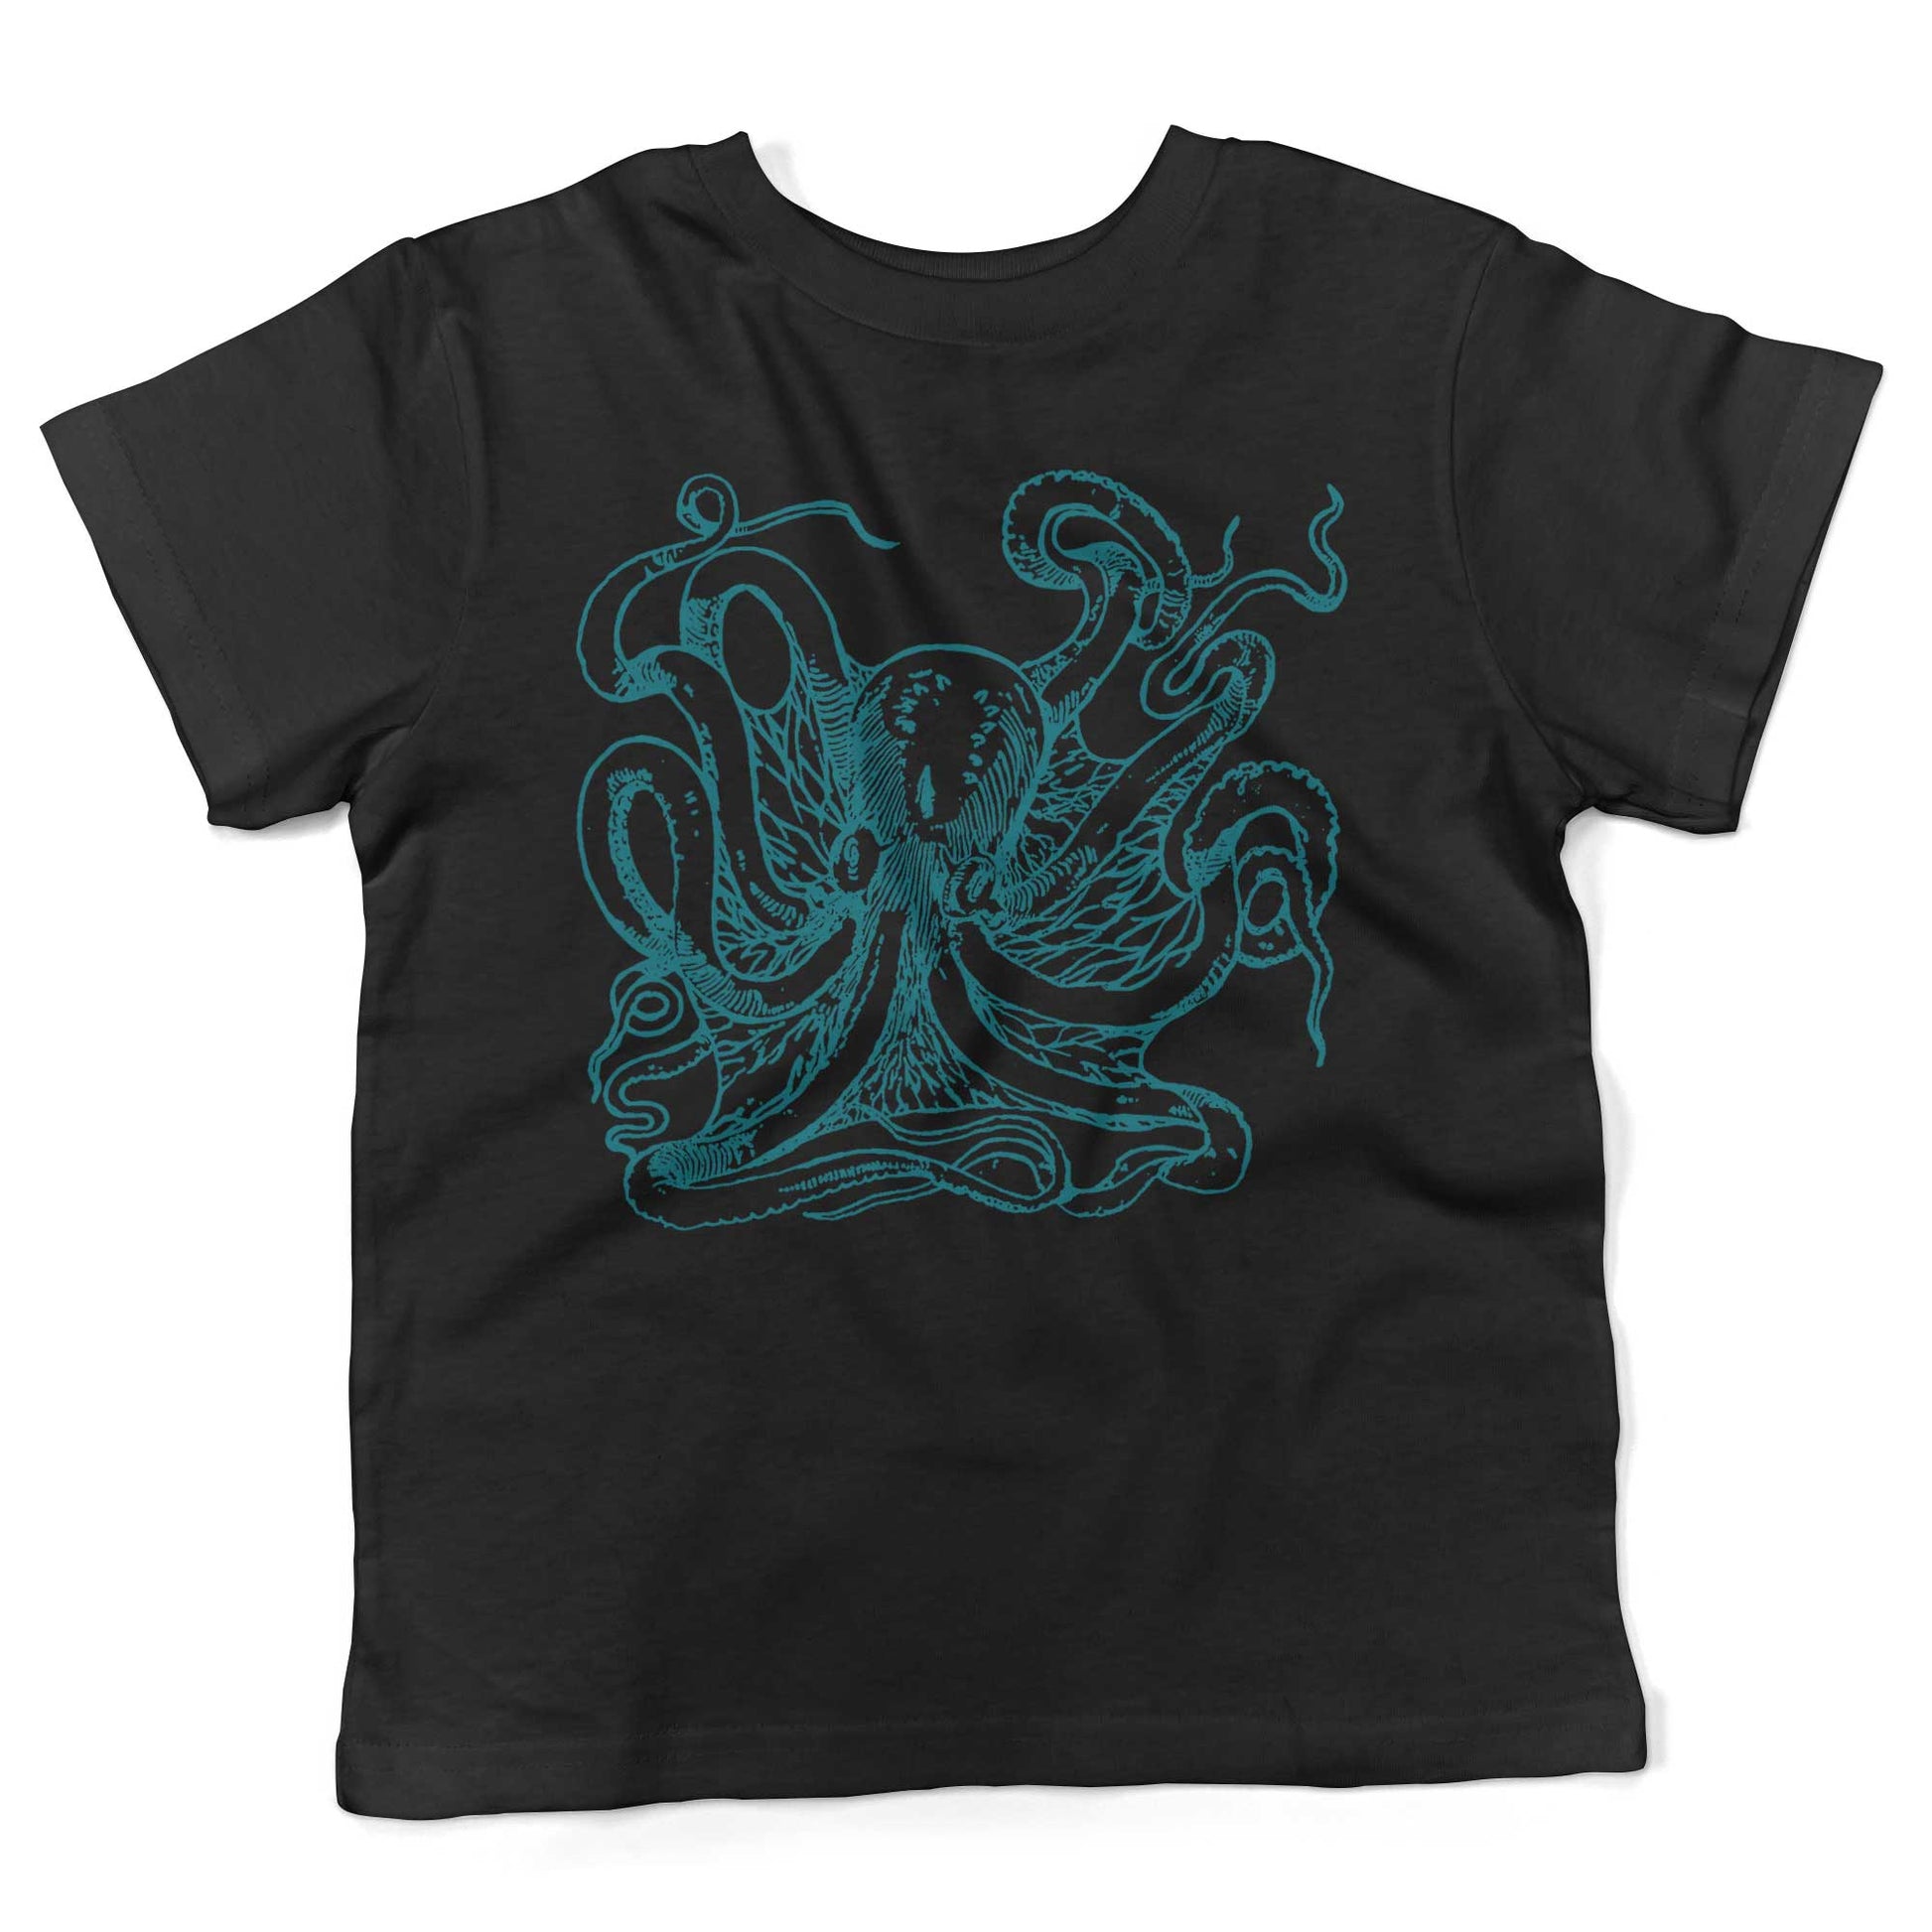 Giant Octopus Toddler Shirt-Organic Black-2T